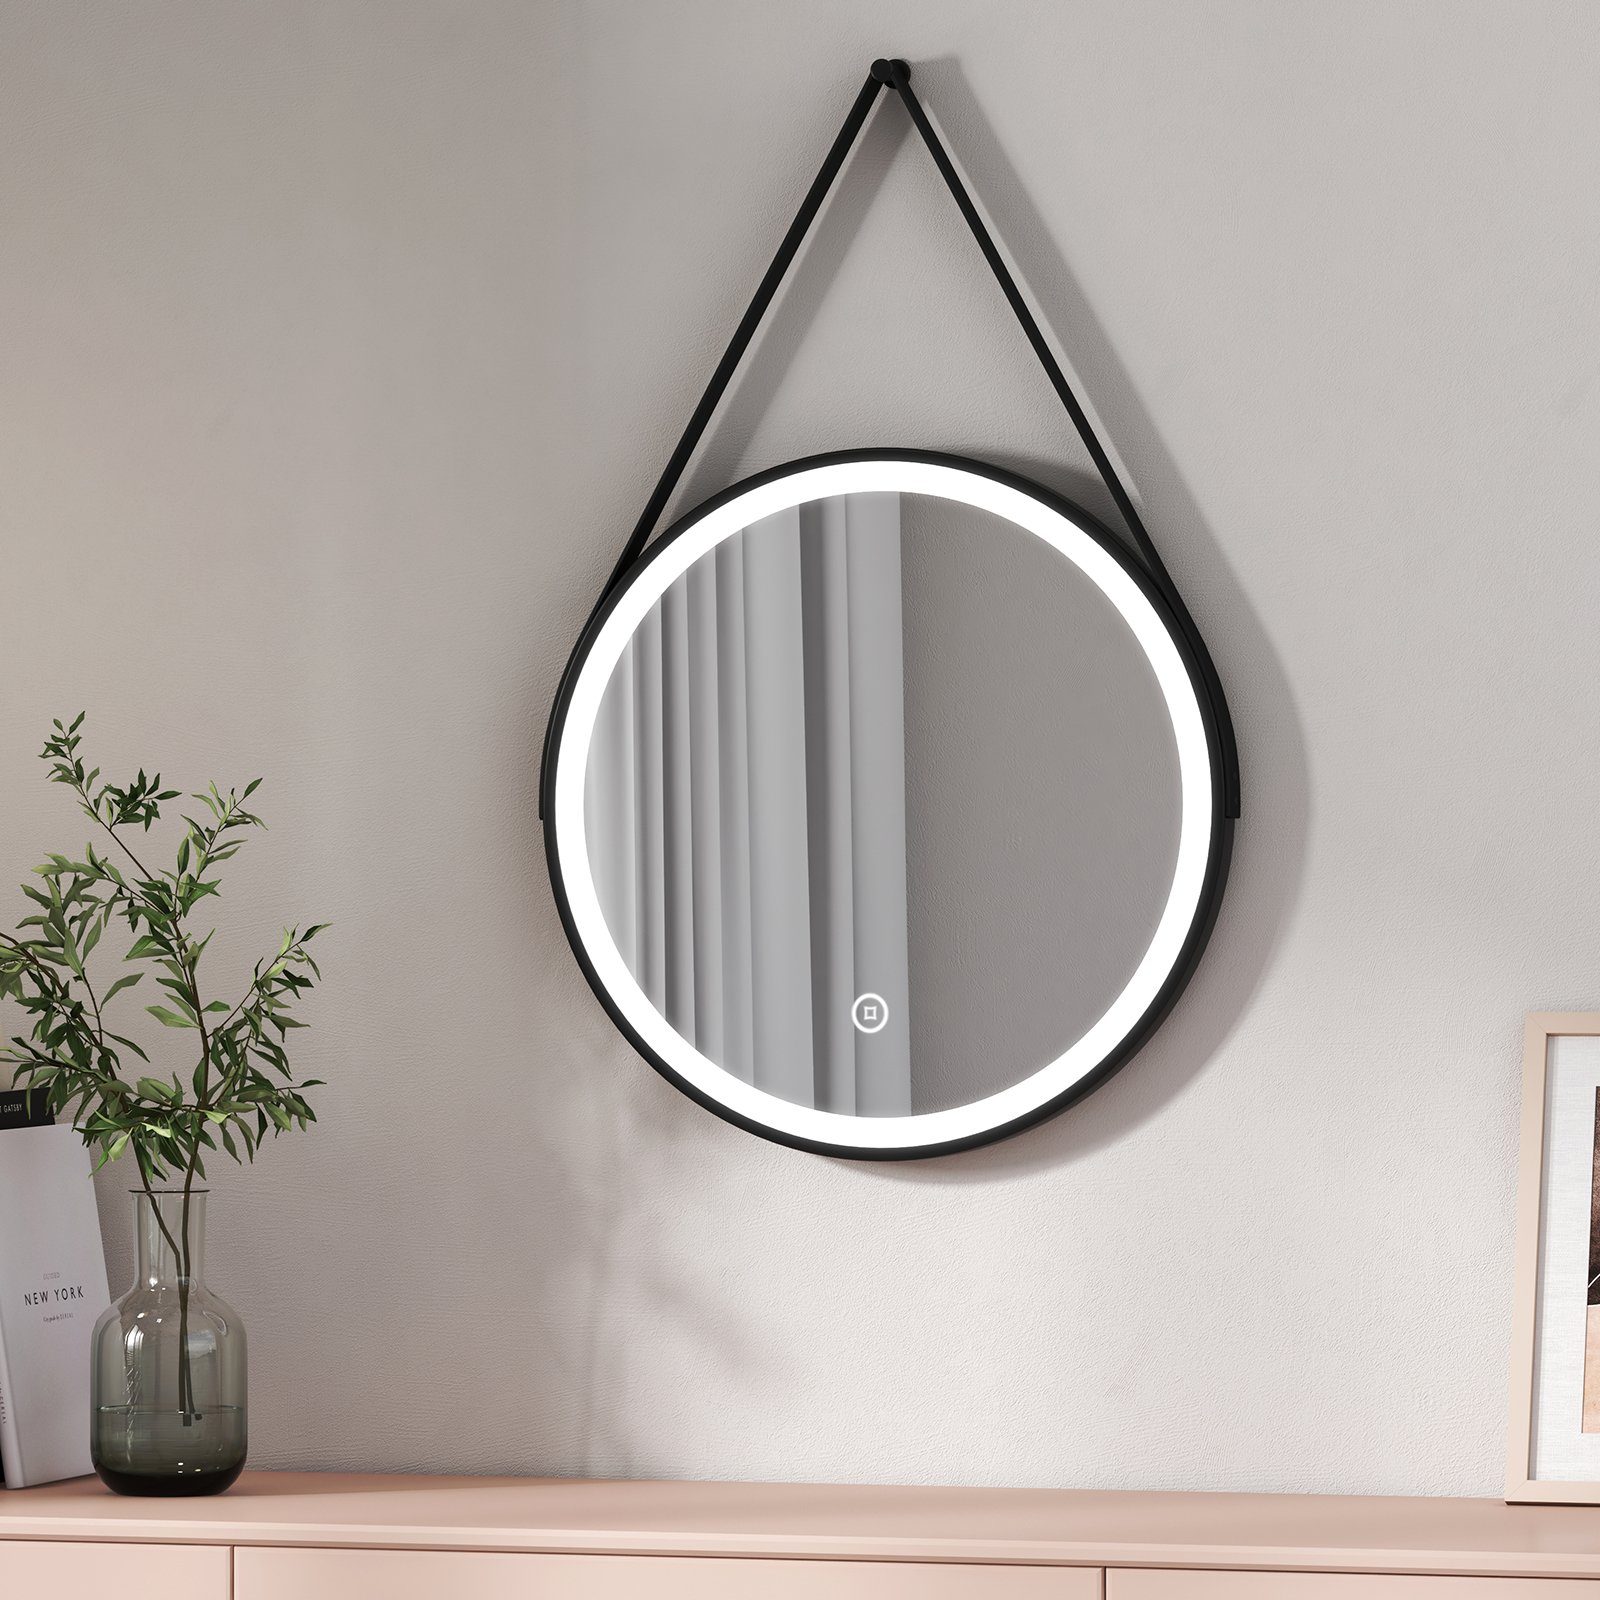 EMKE Badspiegel mit Beleuchtung Rund Badezimmerspiegel schwarzem Rahmen (Modell R4, Φ 50-80cm, Touchschalter), Kaltweiß Licht 6500K, Dimmbar, IP44